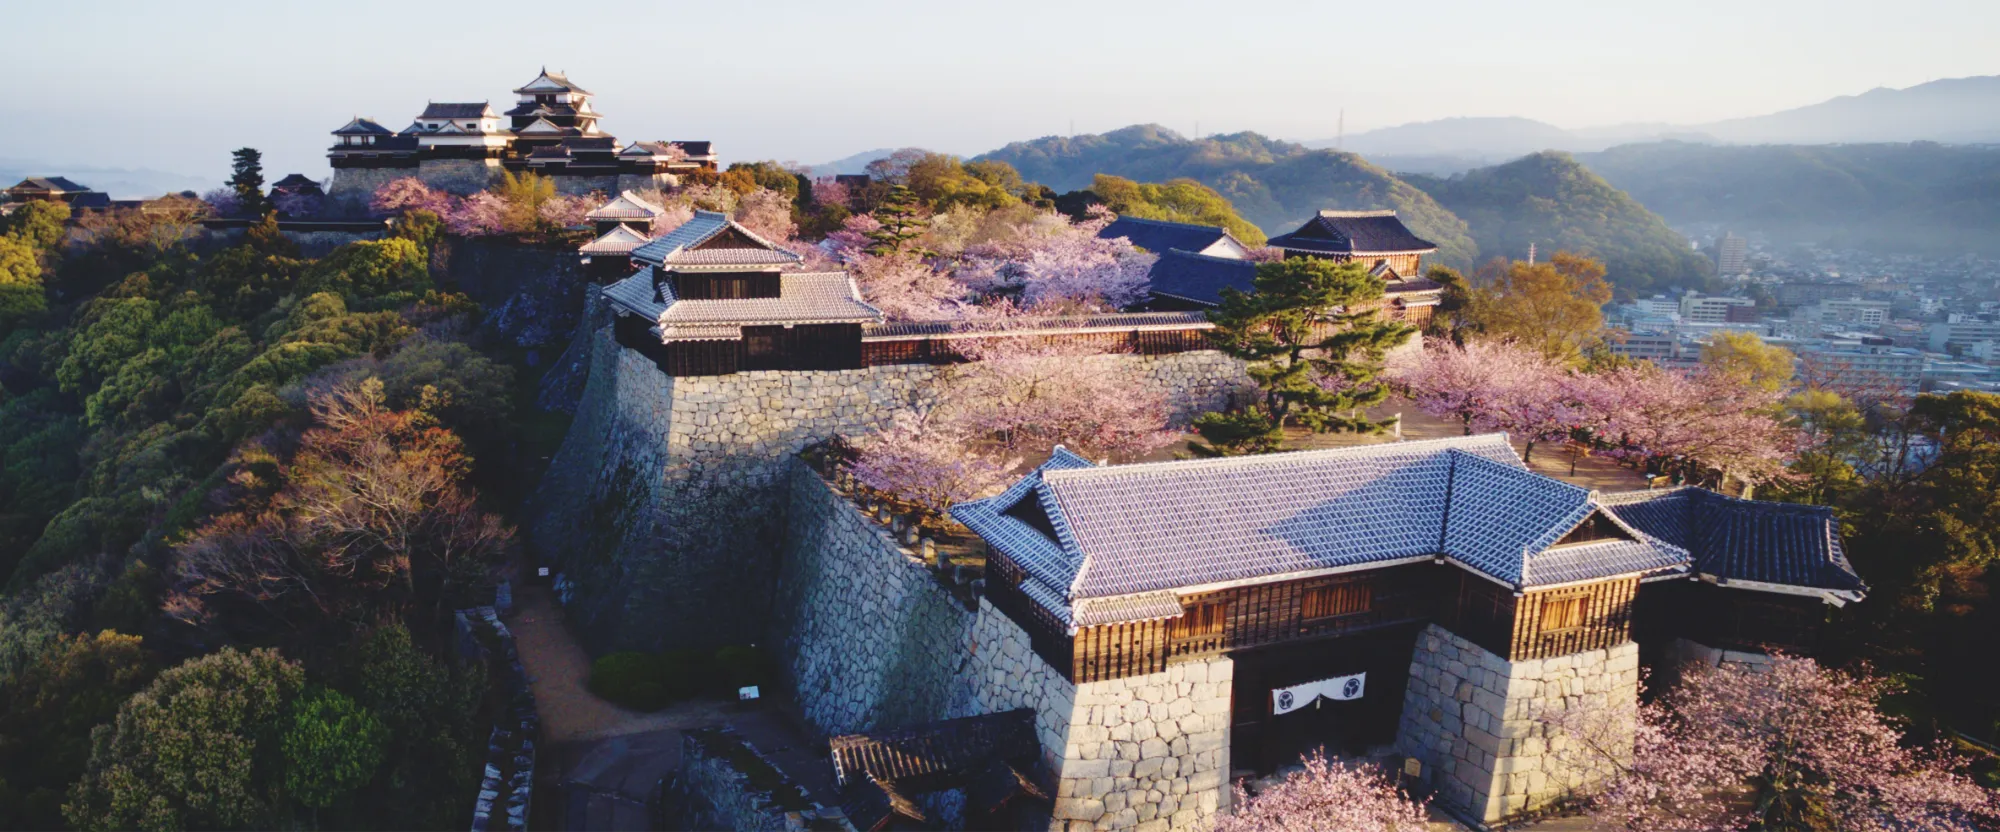 松山城本丸の全景写真